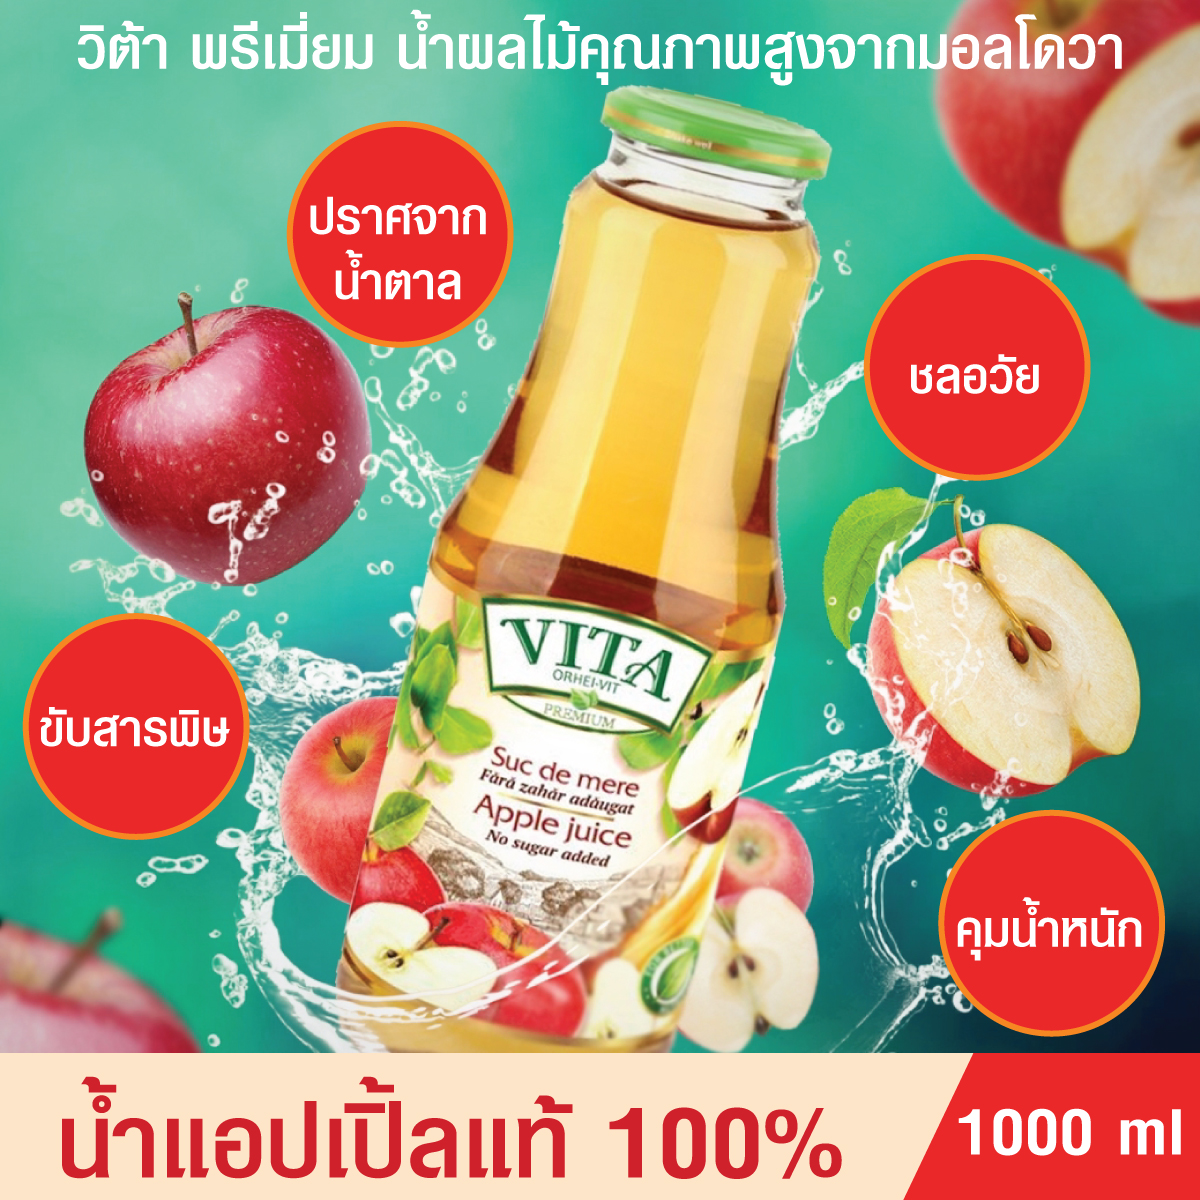 Vita Apple Juice 1,000 ml. น้ำแอปเปิ้ลแท้ 100% ปราศจากน้ำตาล น้ำผลไม้คุณภาพสูงจากมอลโดวา ดื่มเพื่อสุขภาพ หรือเป็นของฝากสำหรับคนที่คุณรัก